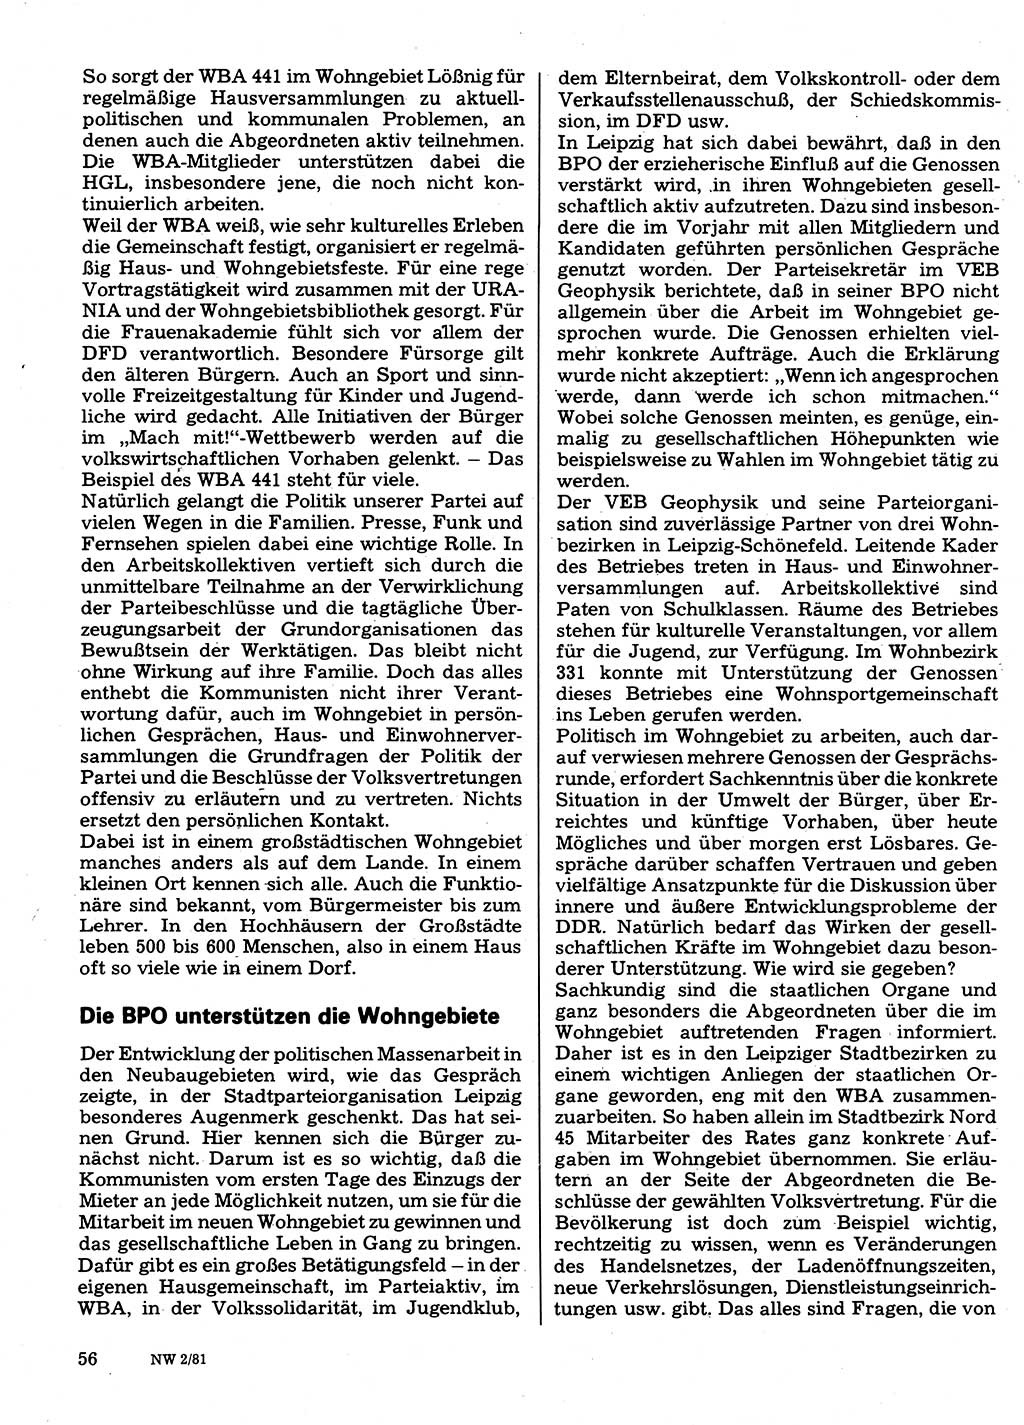 Neuer Weg (NW), Organ des Zentralkomitees (ZK) der SED (Sozialistische Einheitspartei Deutschlands) für Fragen des Parteilebens, 36. Jahrgang [Deutsche Demokratische Republik (DDR)] 1981, Seite 56 (NW ZK SED DDR 1981, S. 56)